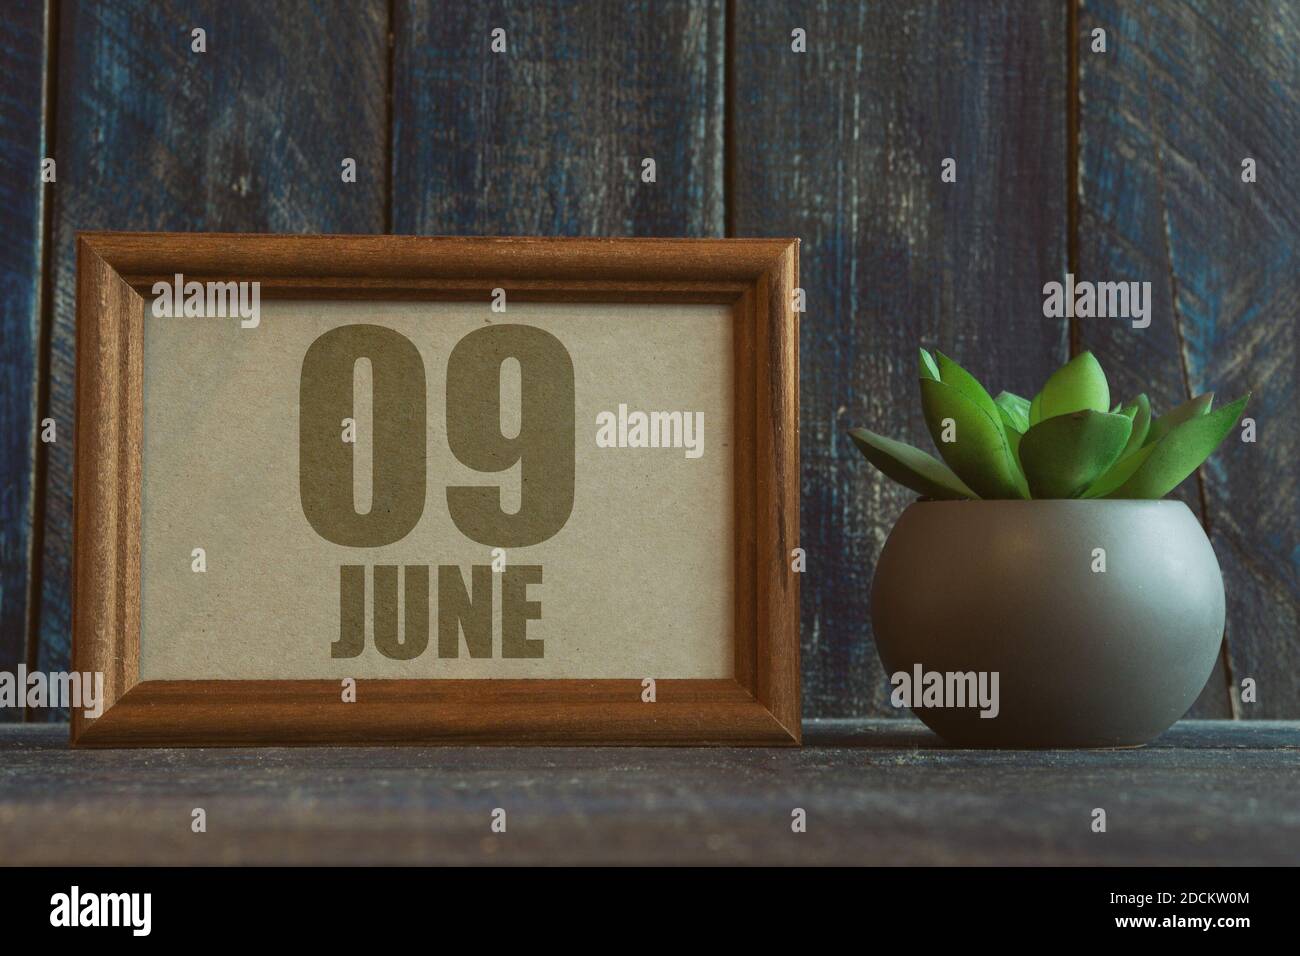 juni. Tag 9 des Monats, Datum im Rahmen neben Sukkulenten auf hölzernen Hintergrund Sommermonat, Tag des Jahres Konzept. Stockfoto